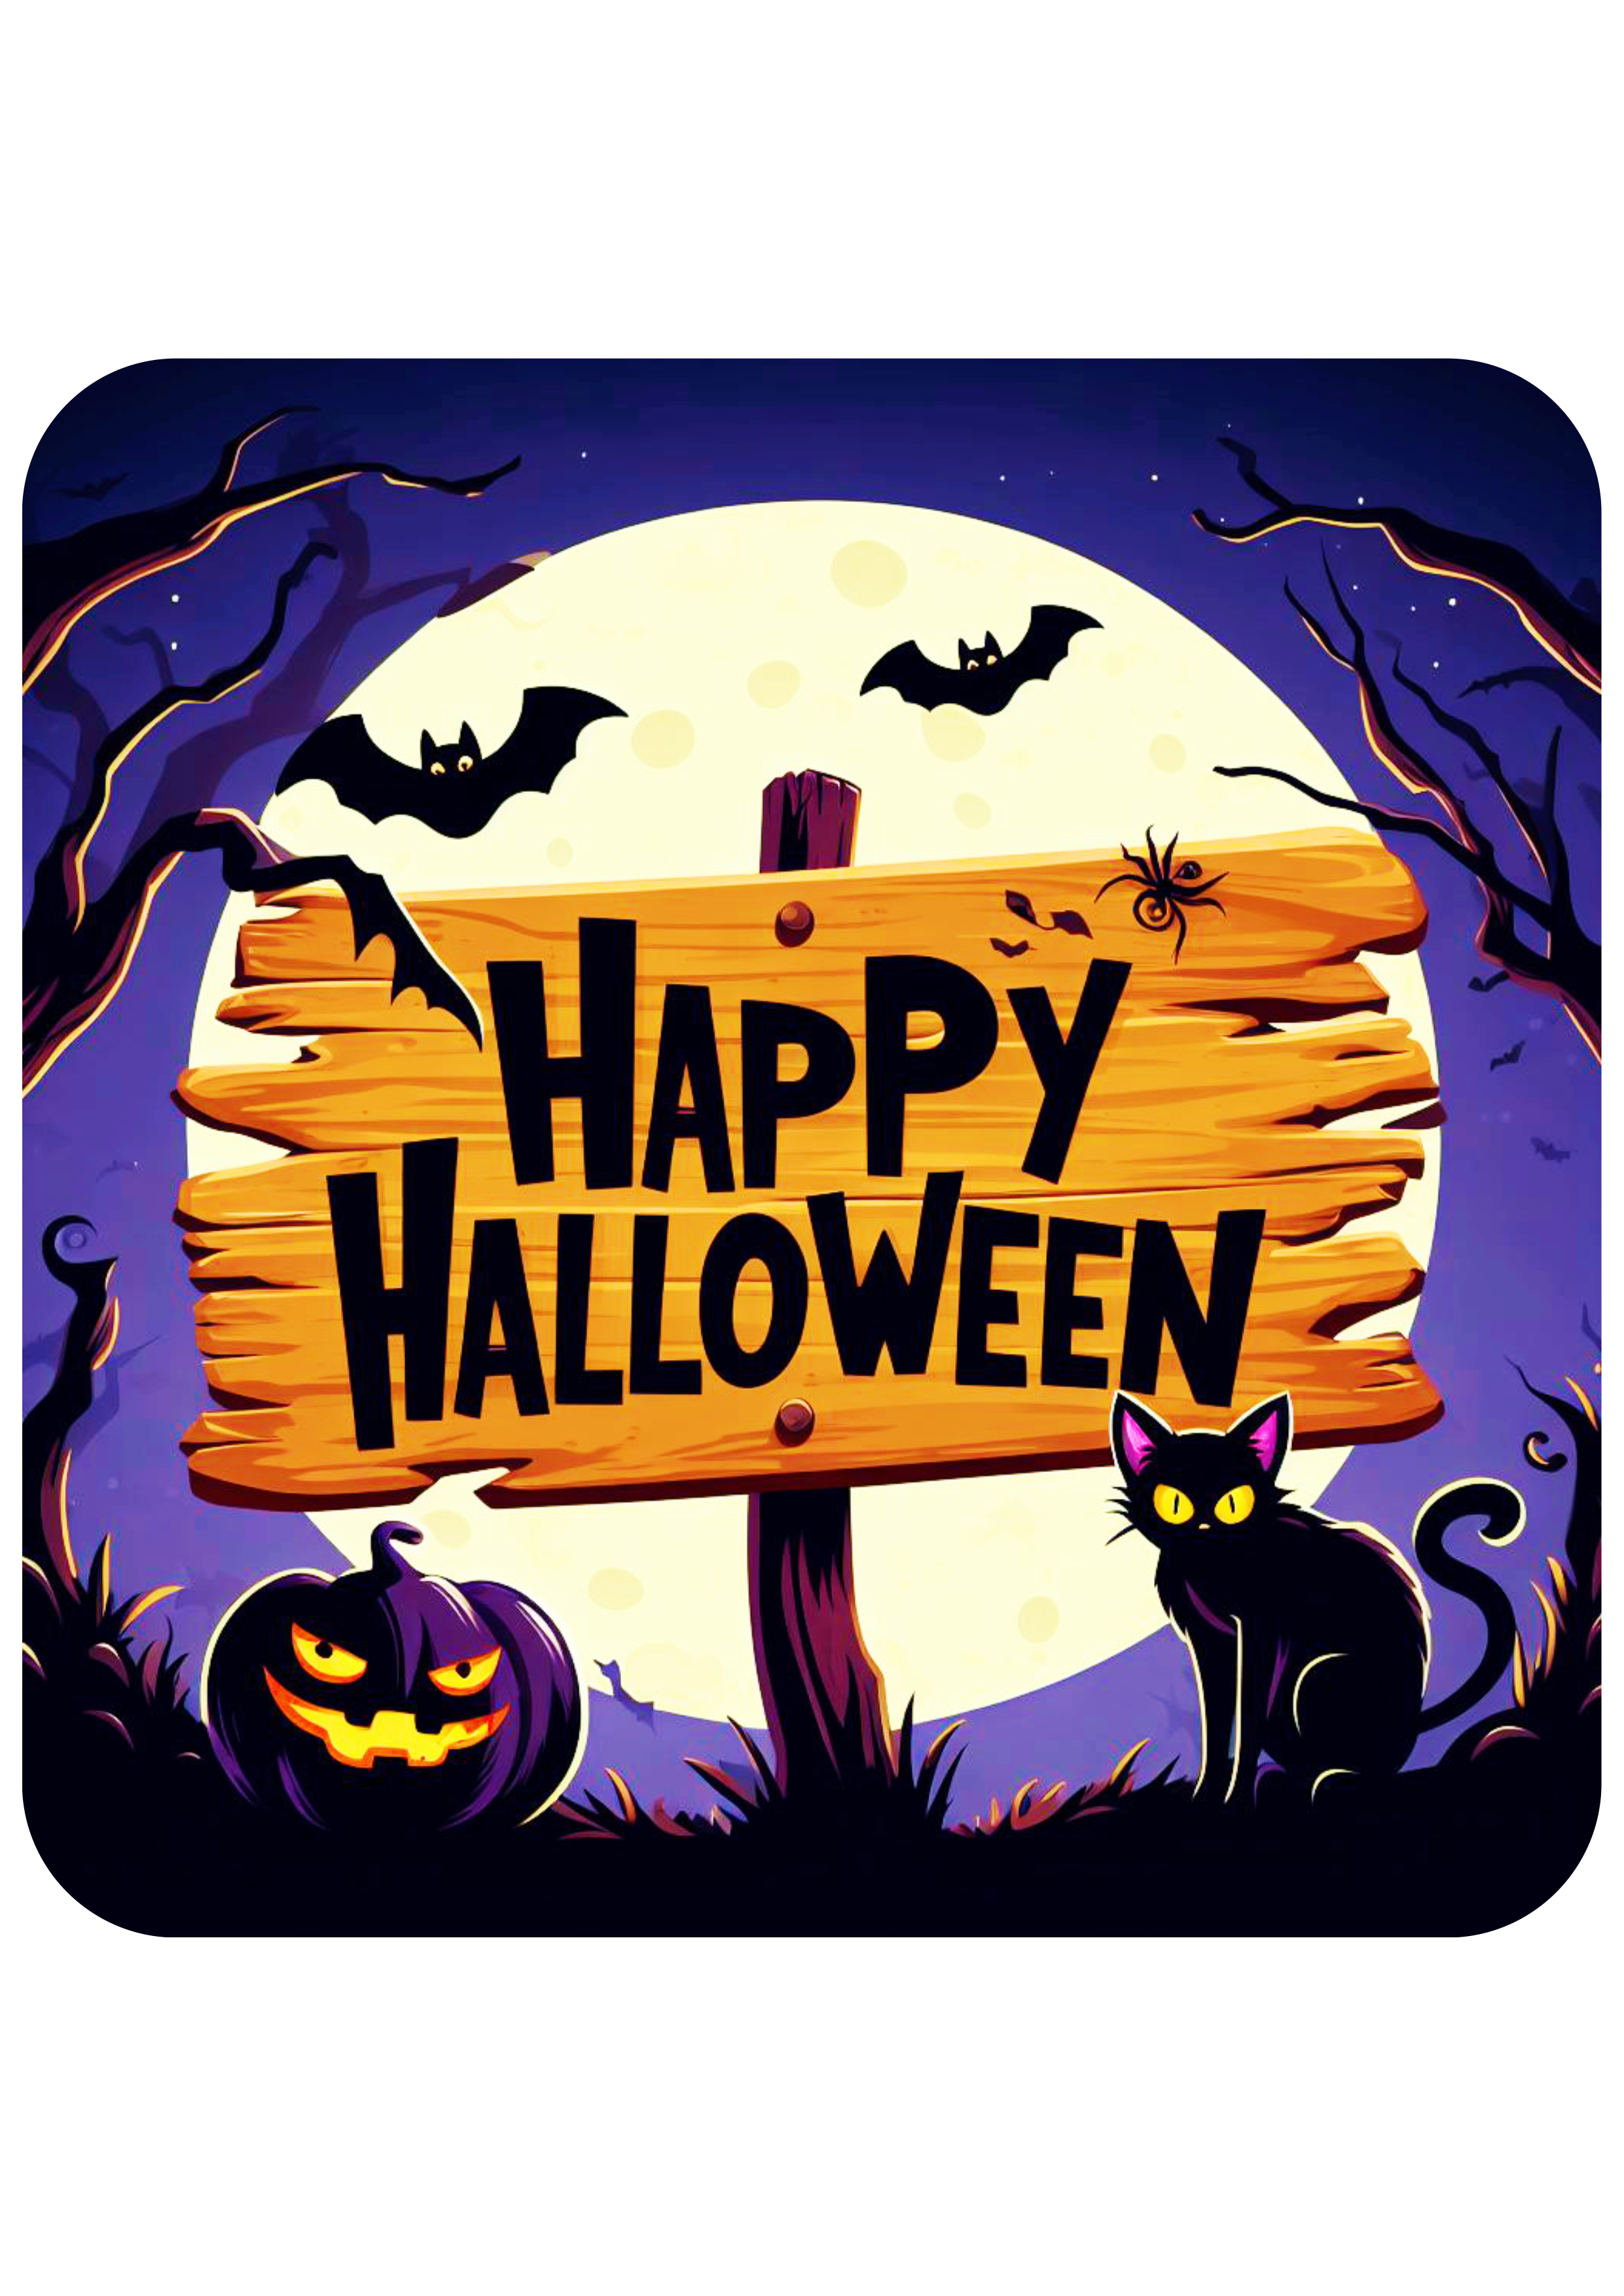 Happy Halloween estampa bonita noite de lua cheia assustadora dia das bruxas pronto para imprimir png